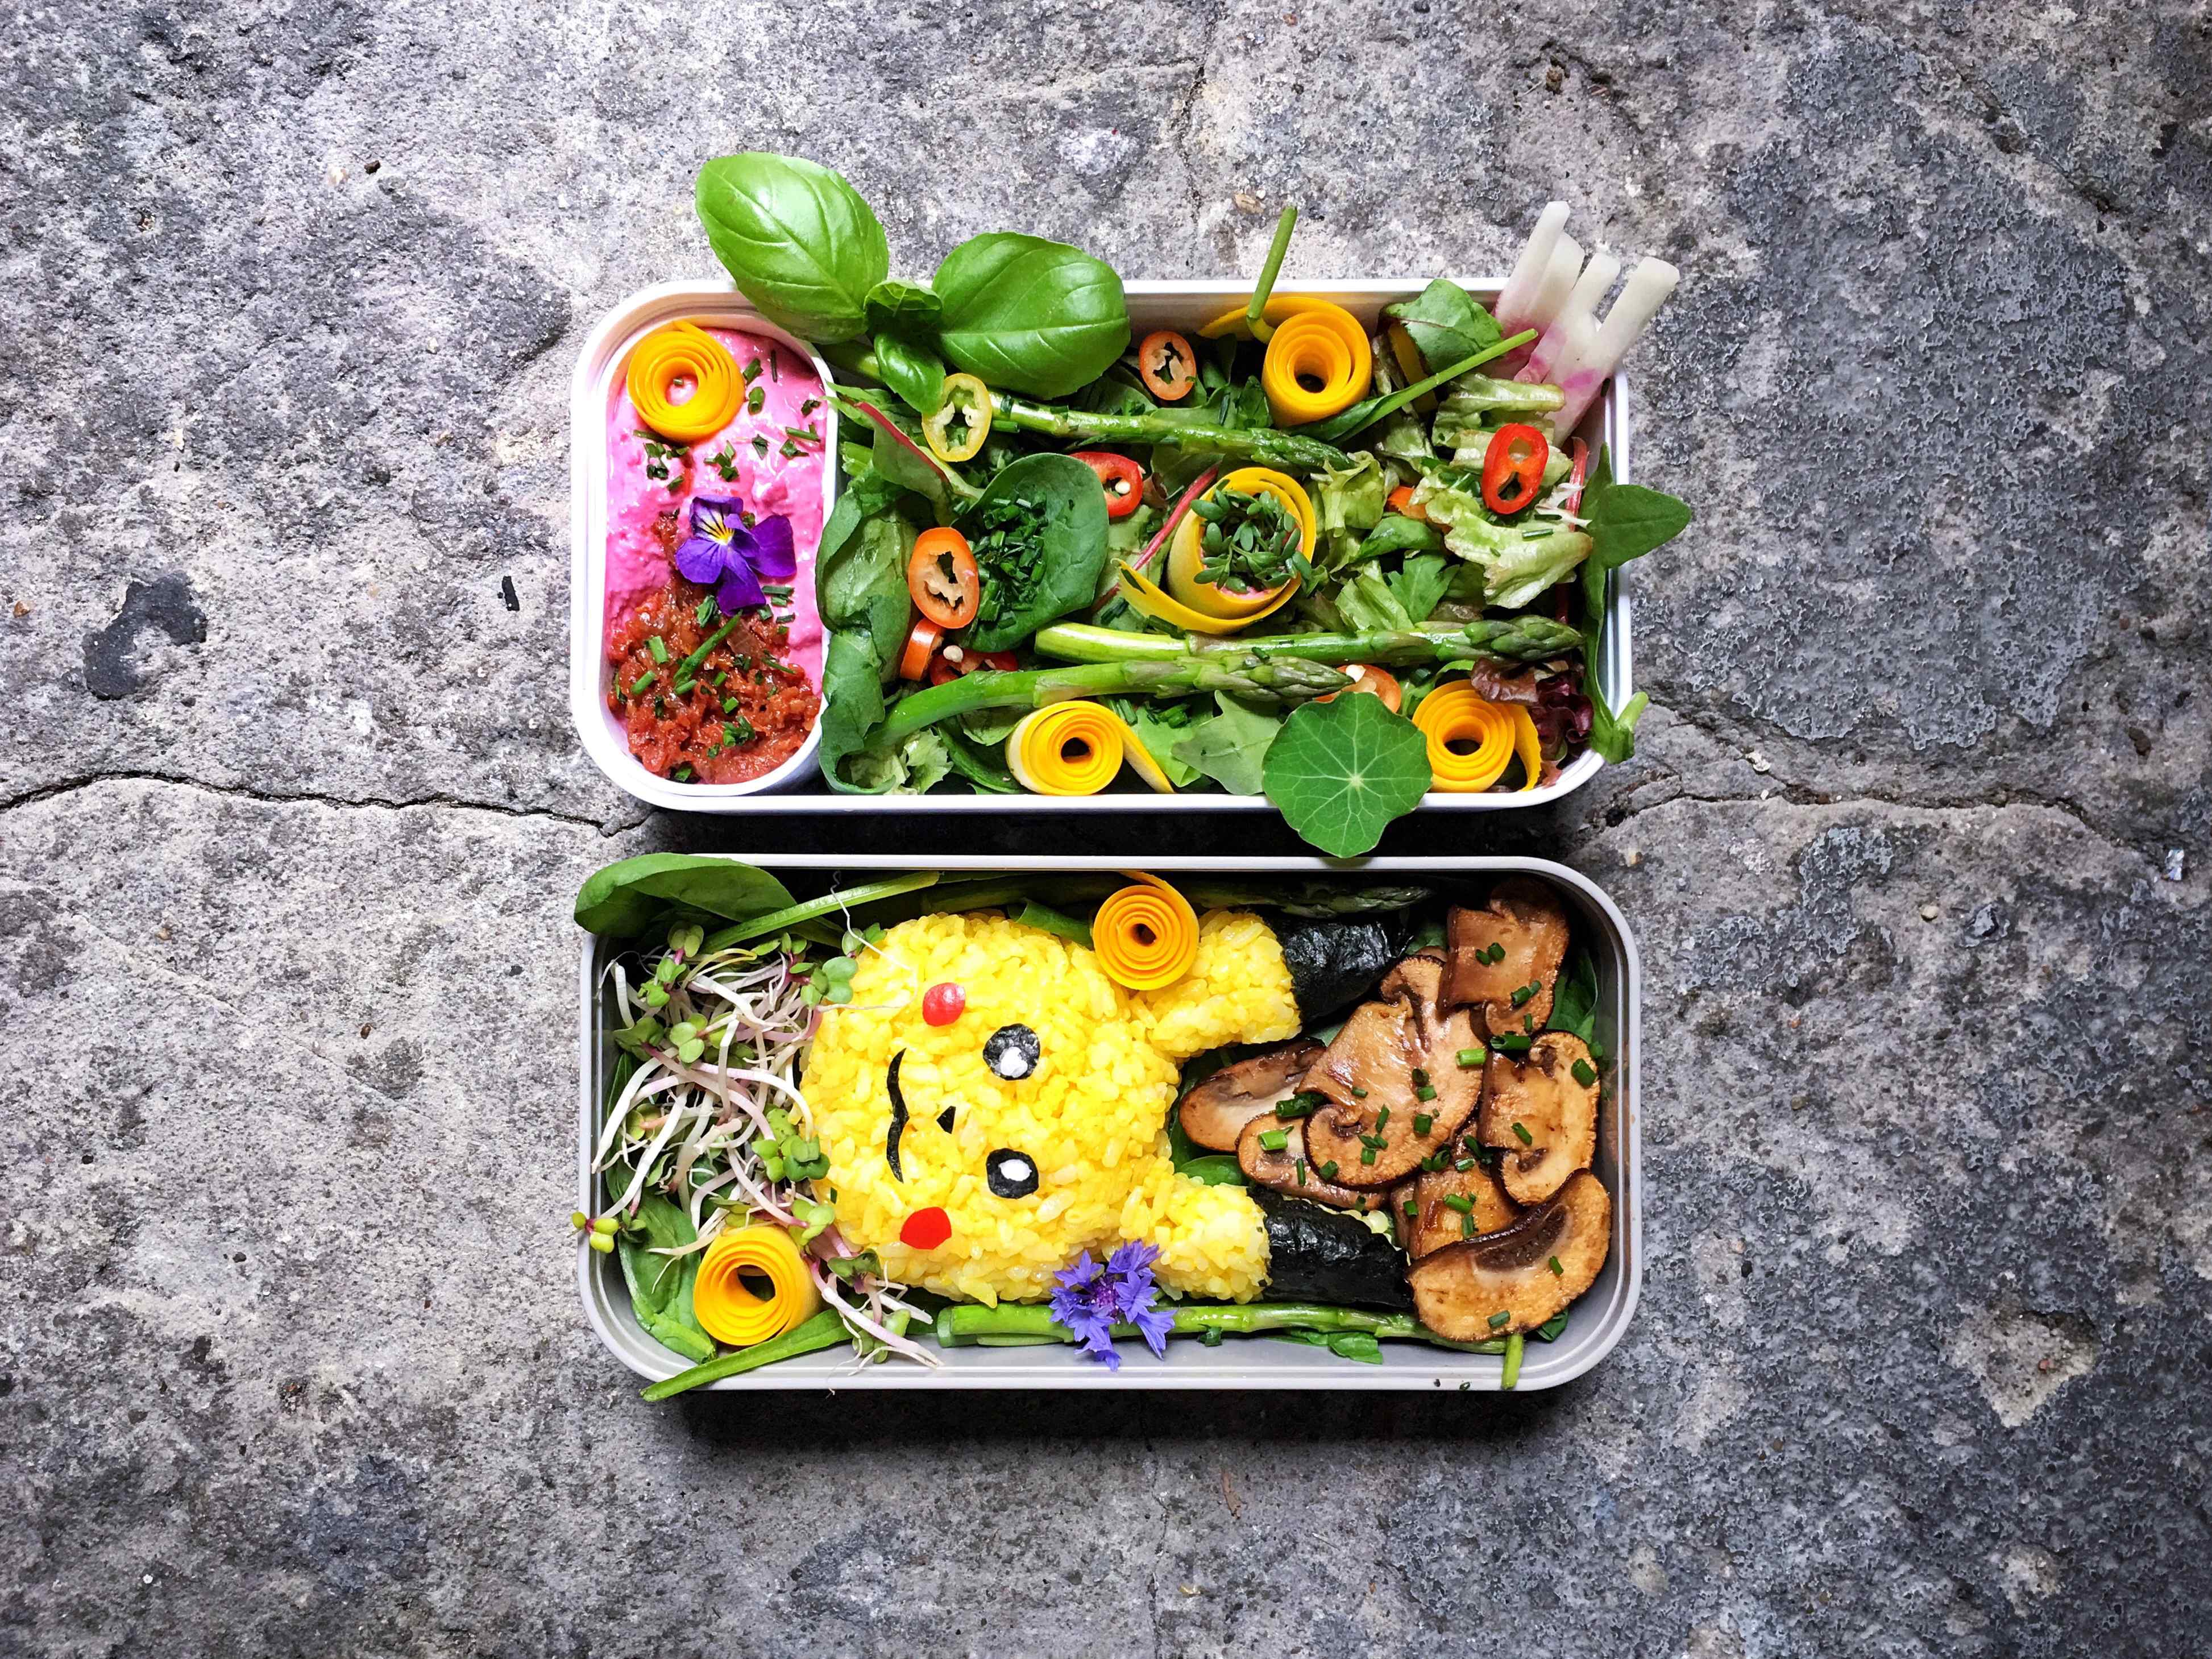 Onderdrukker Ongeldig Verrast 5 Bento Box Ideas - the indigo kitchen